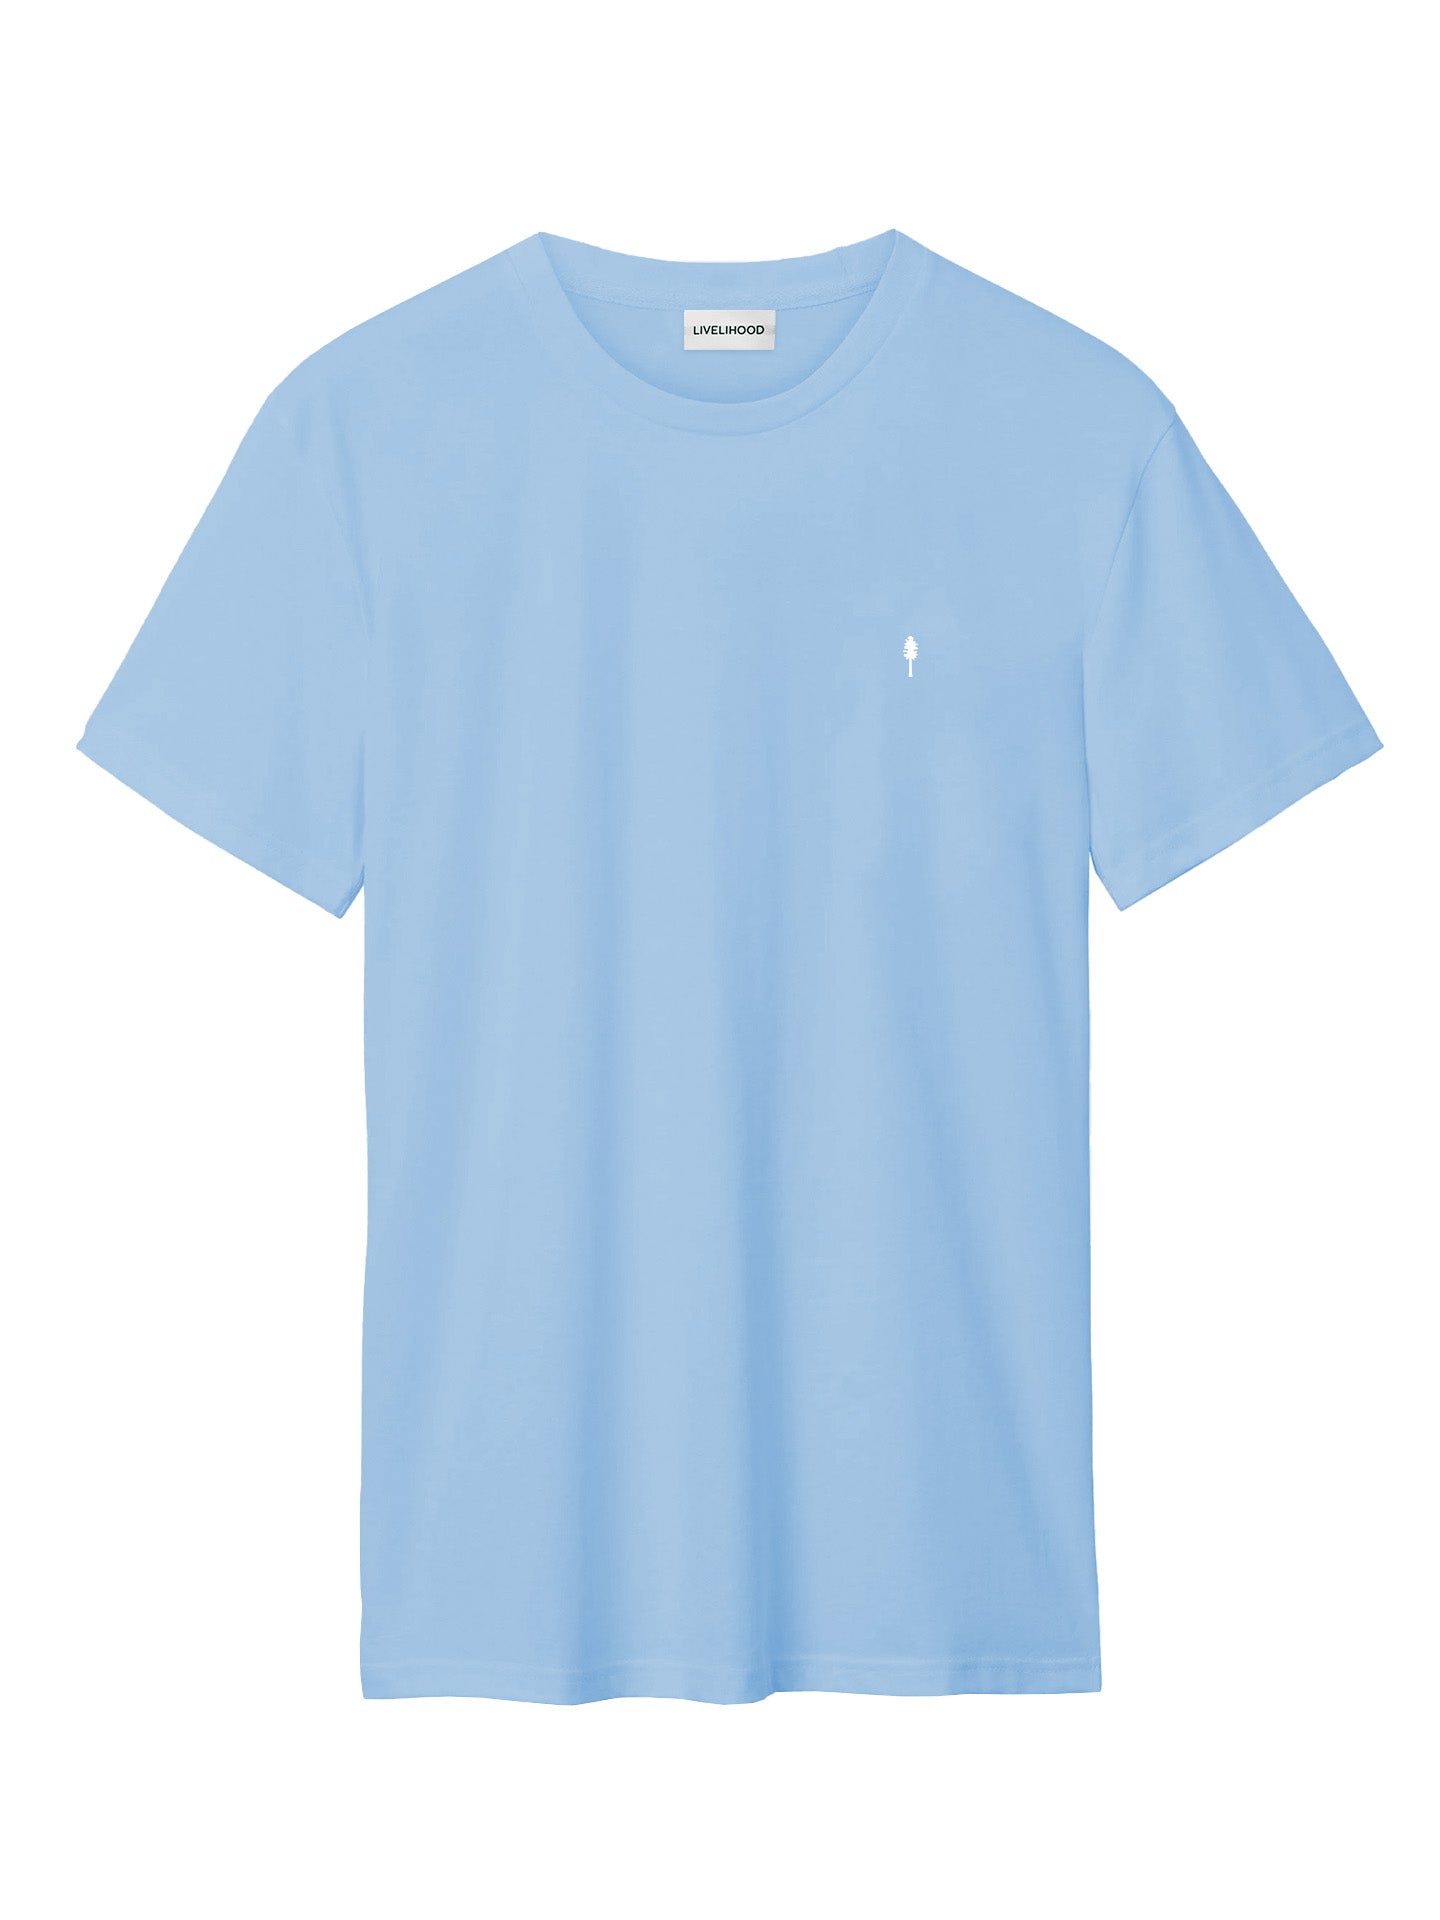 The T-Shirt - Glacier Blue